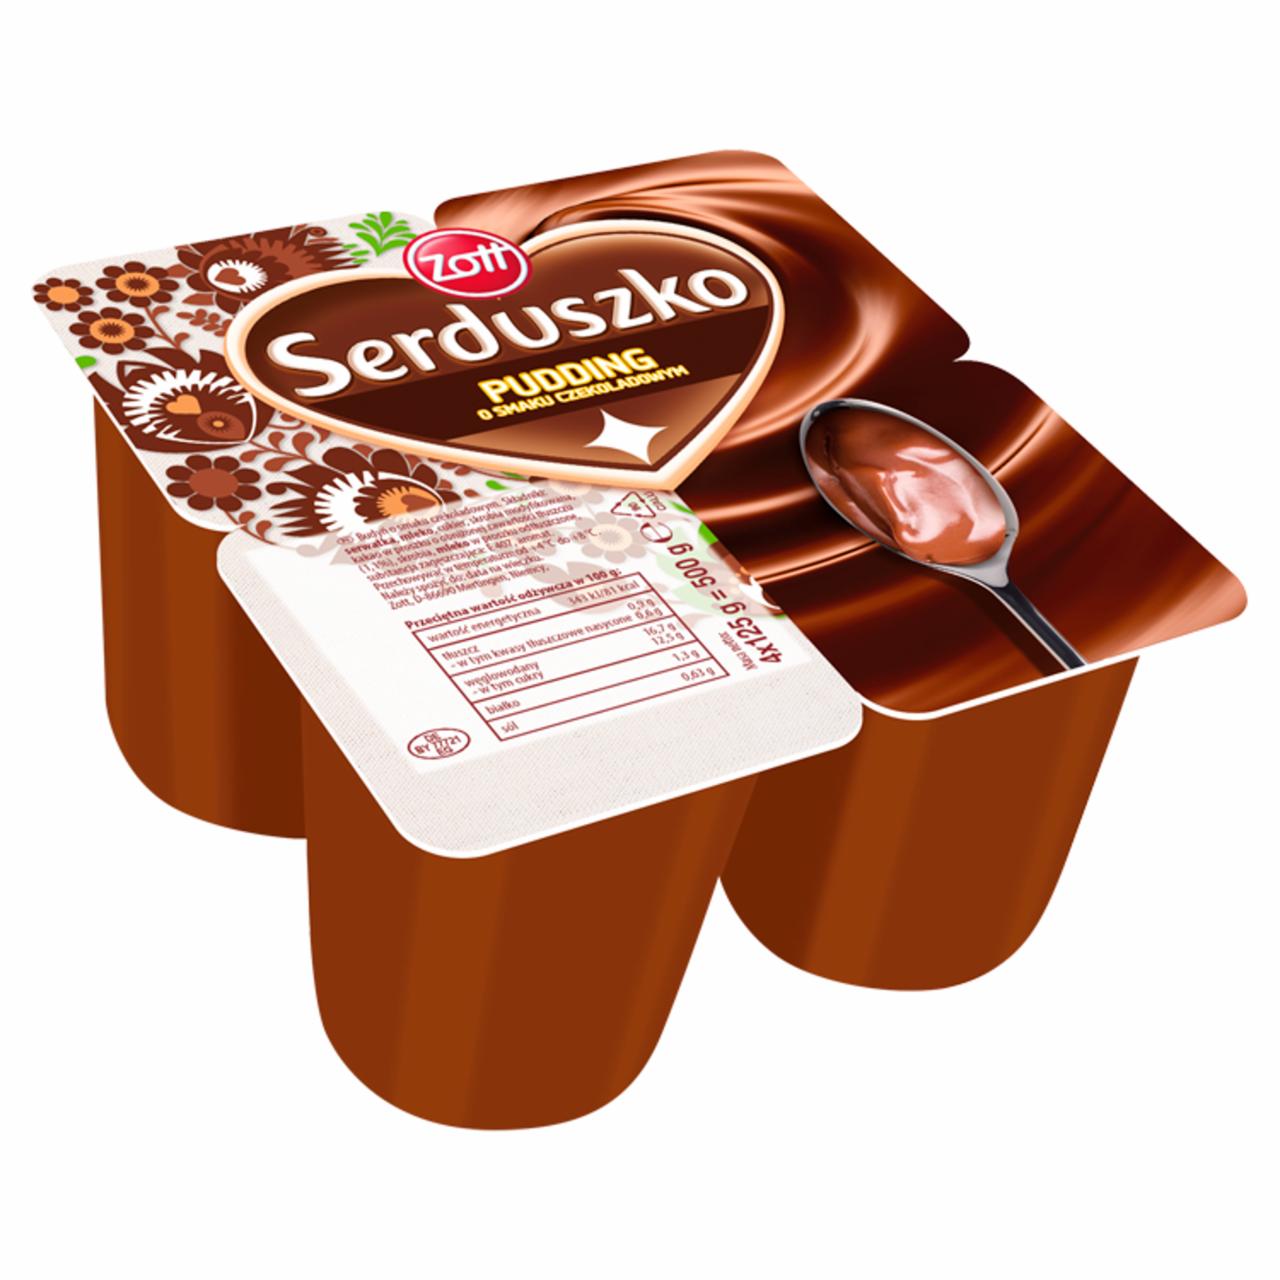 Zdjęcia - Zott Serduszko Pudding czekolada 500 g (4 x 125 g)